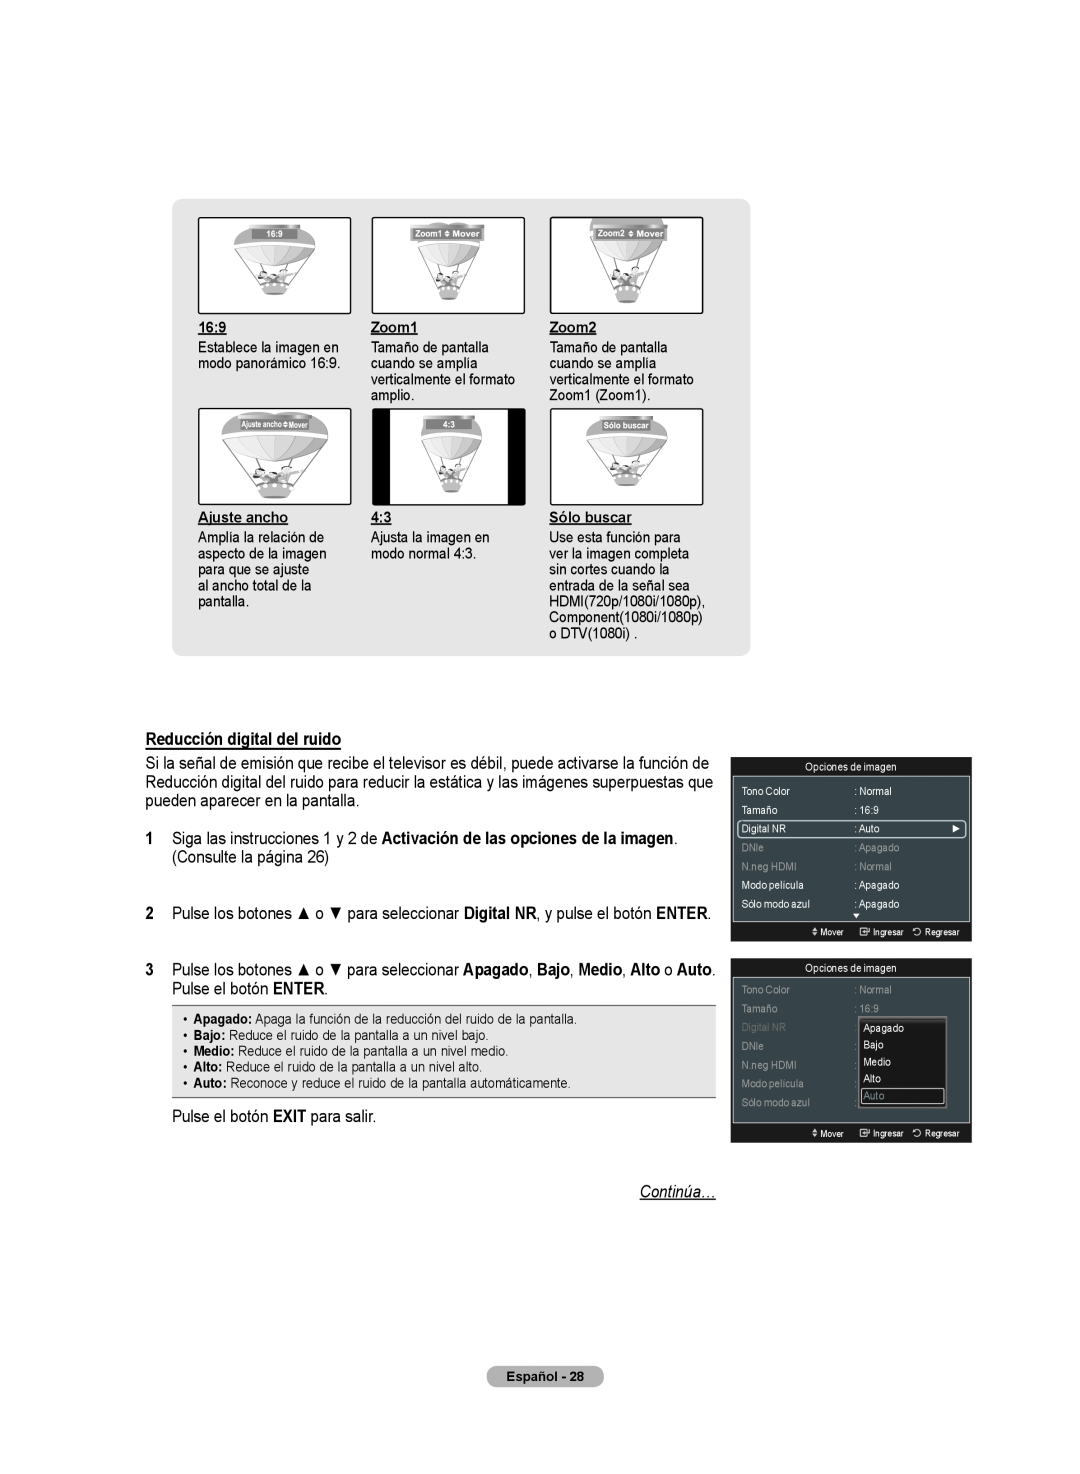 Samsung 510 user manual Reducción digital del ruido, Continúa…, entrada de la señal sea 